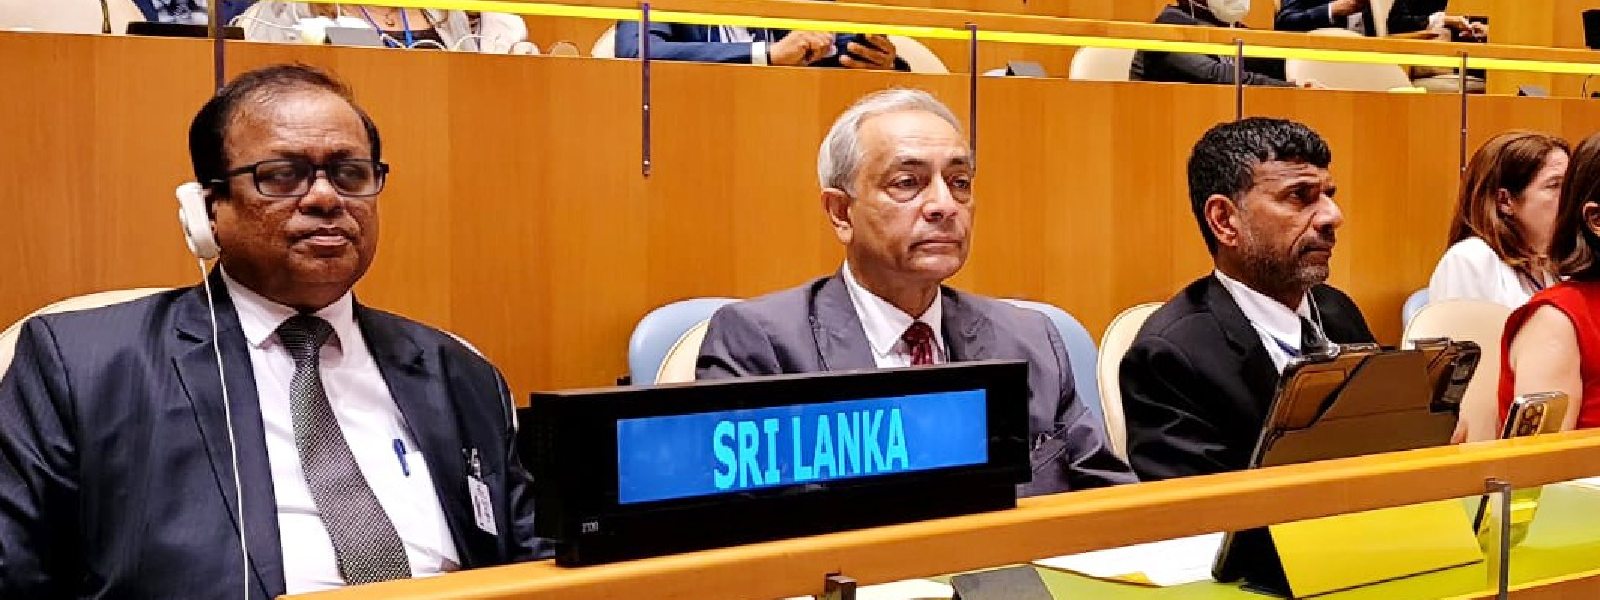 Sri Lanka at UN Education Summit